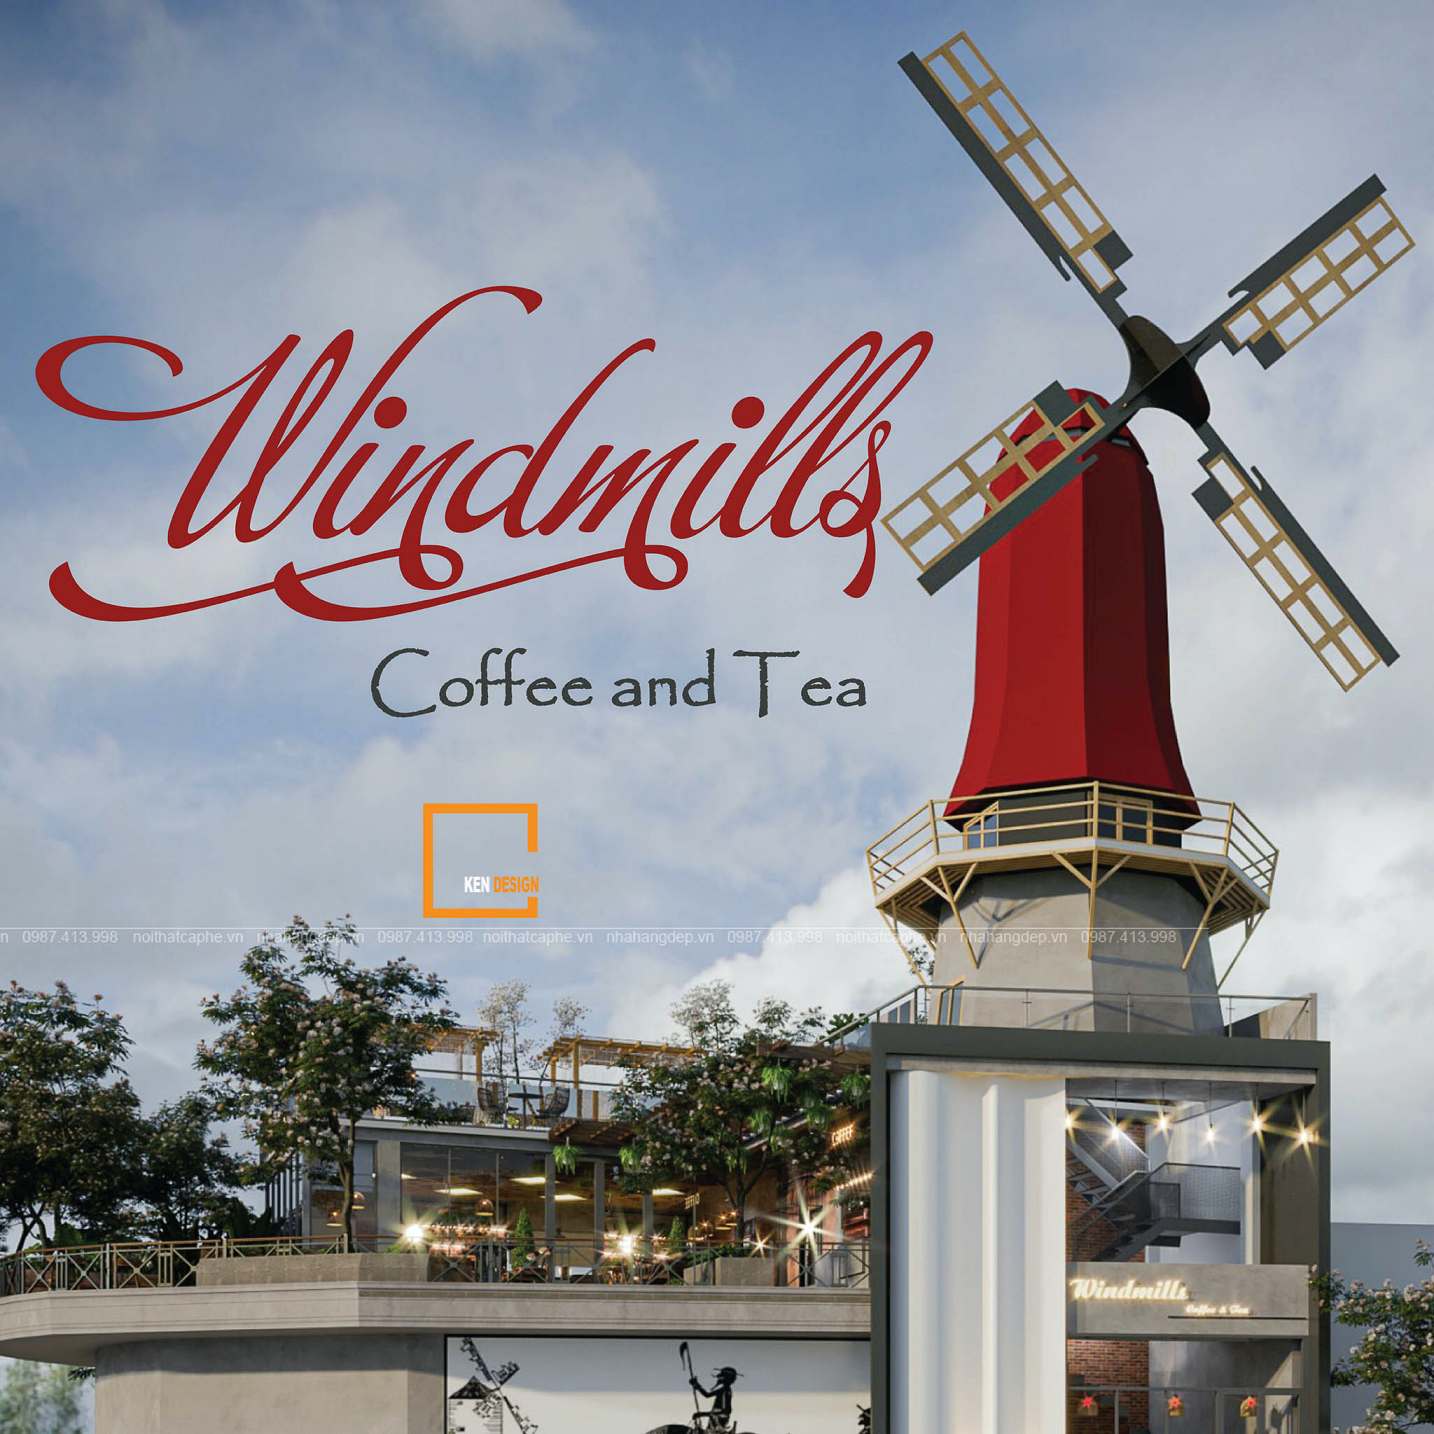 Thiết kế Windmills Coffee and Tea